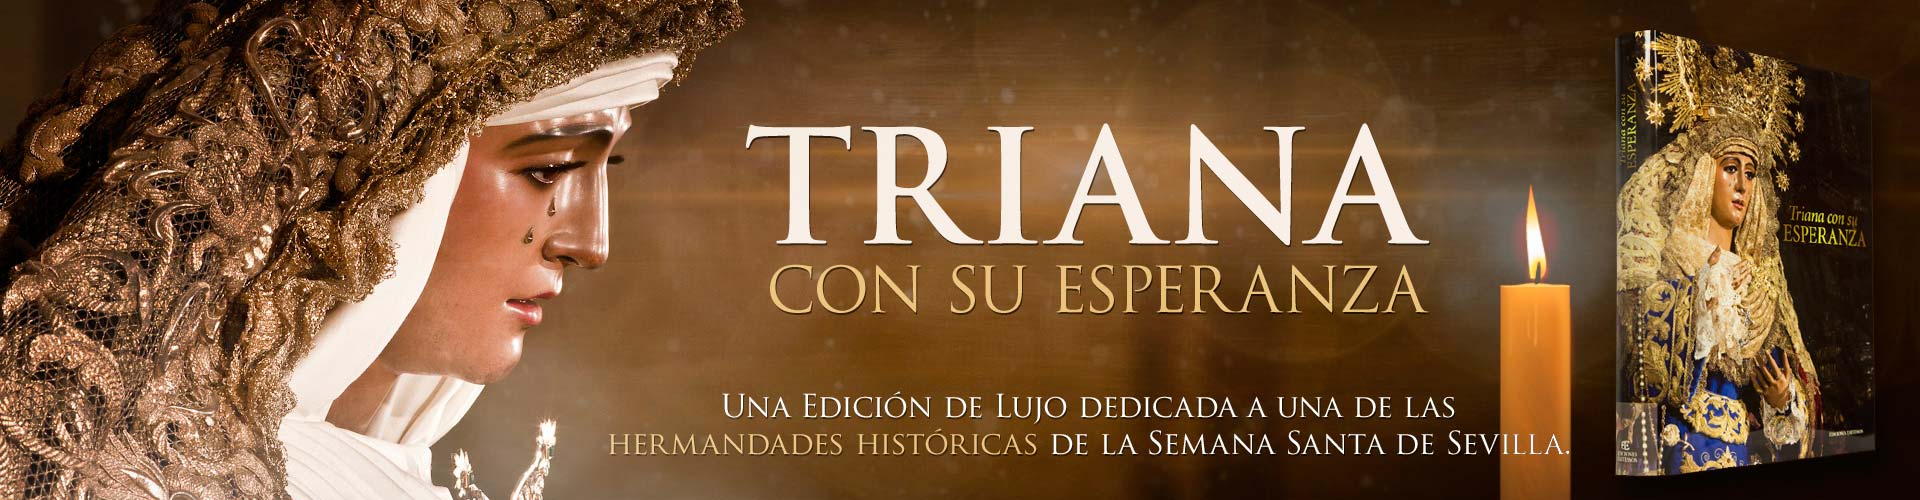 Esperanza de Triana: El mayor libro dedicado a una hermandad histórica de la Semana Santa de Sevilla.